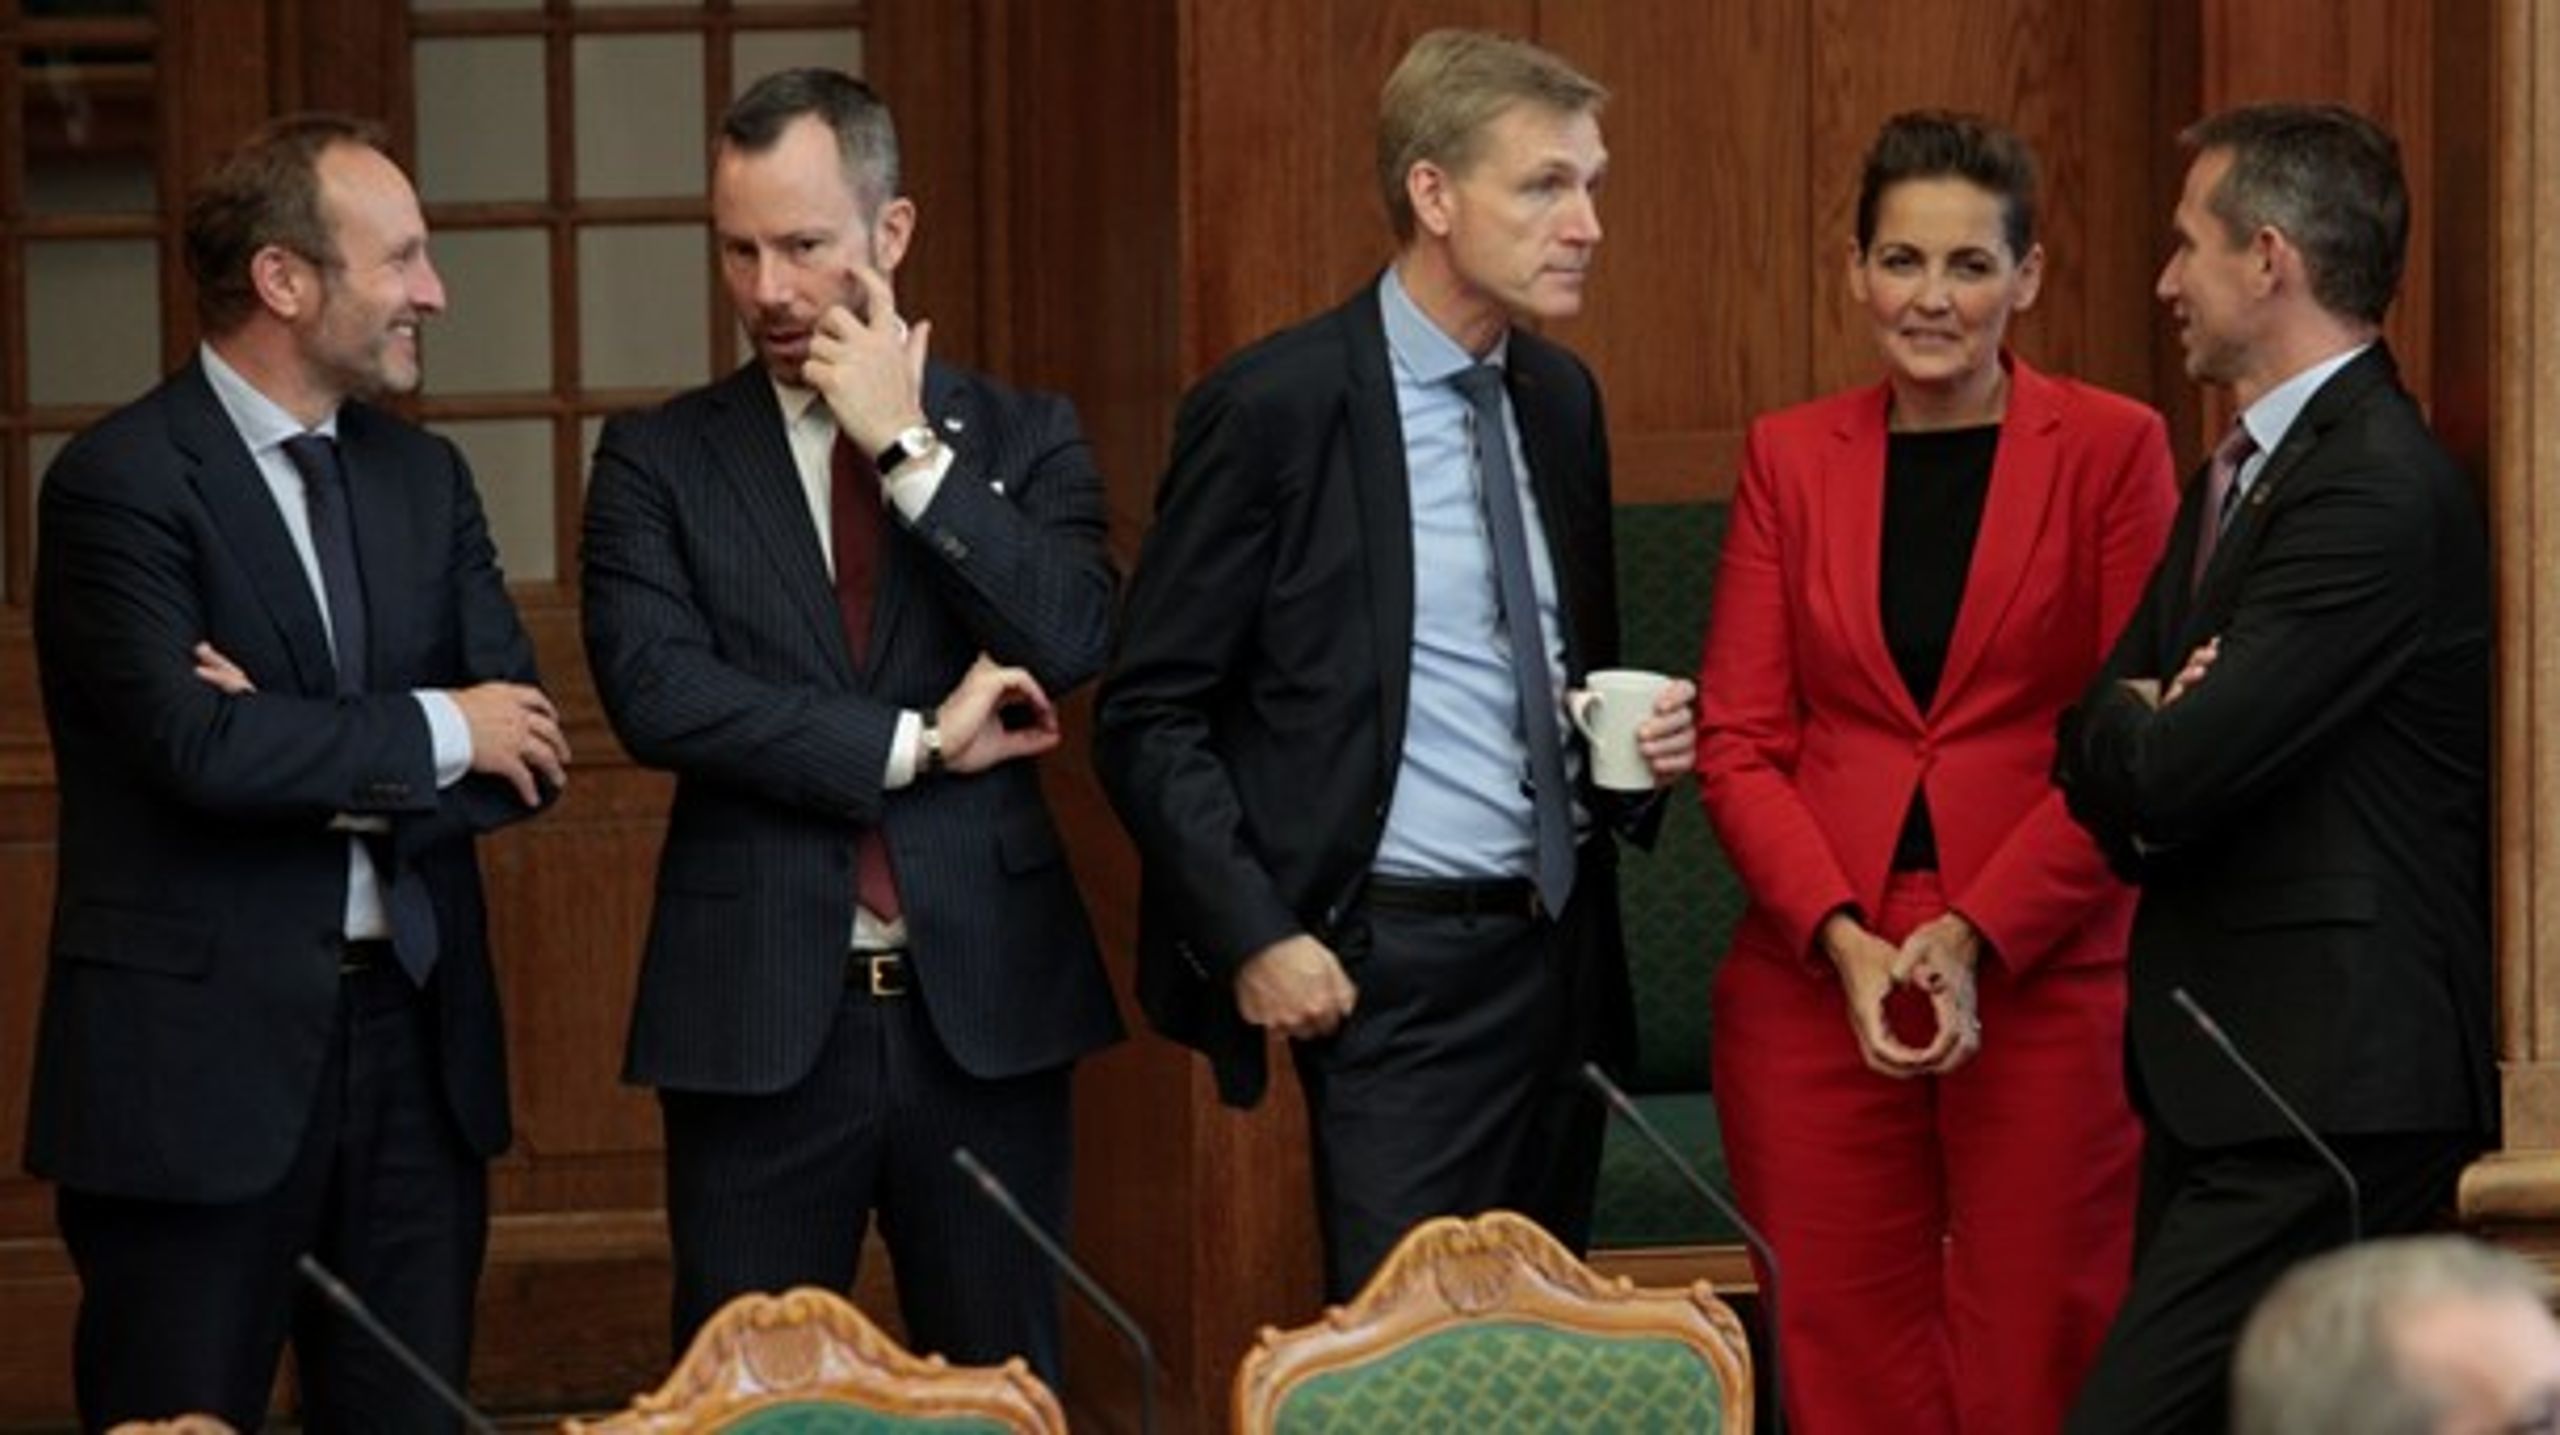 I dansk politik bør man samle sig på midten om et nationalt kompromis på udlændingeområdet, mener Martin Lidegaard (R).